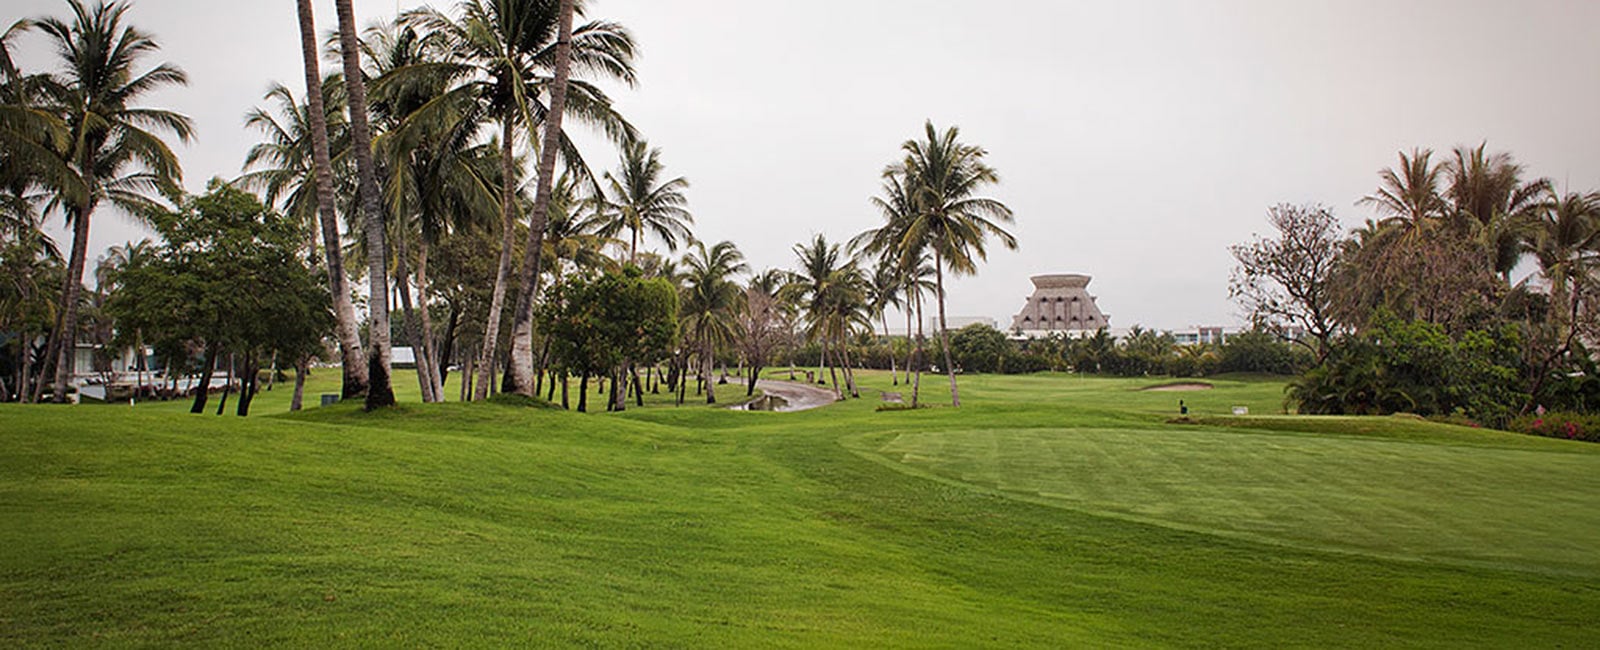 Golf at The Grand Mayan at Vidanta Acapulco in Mexico